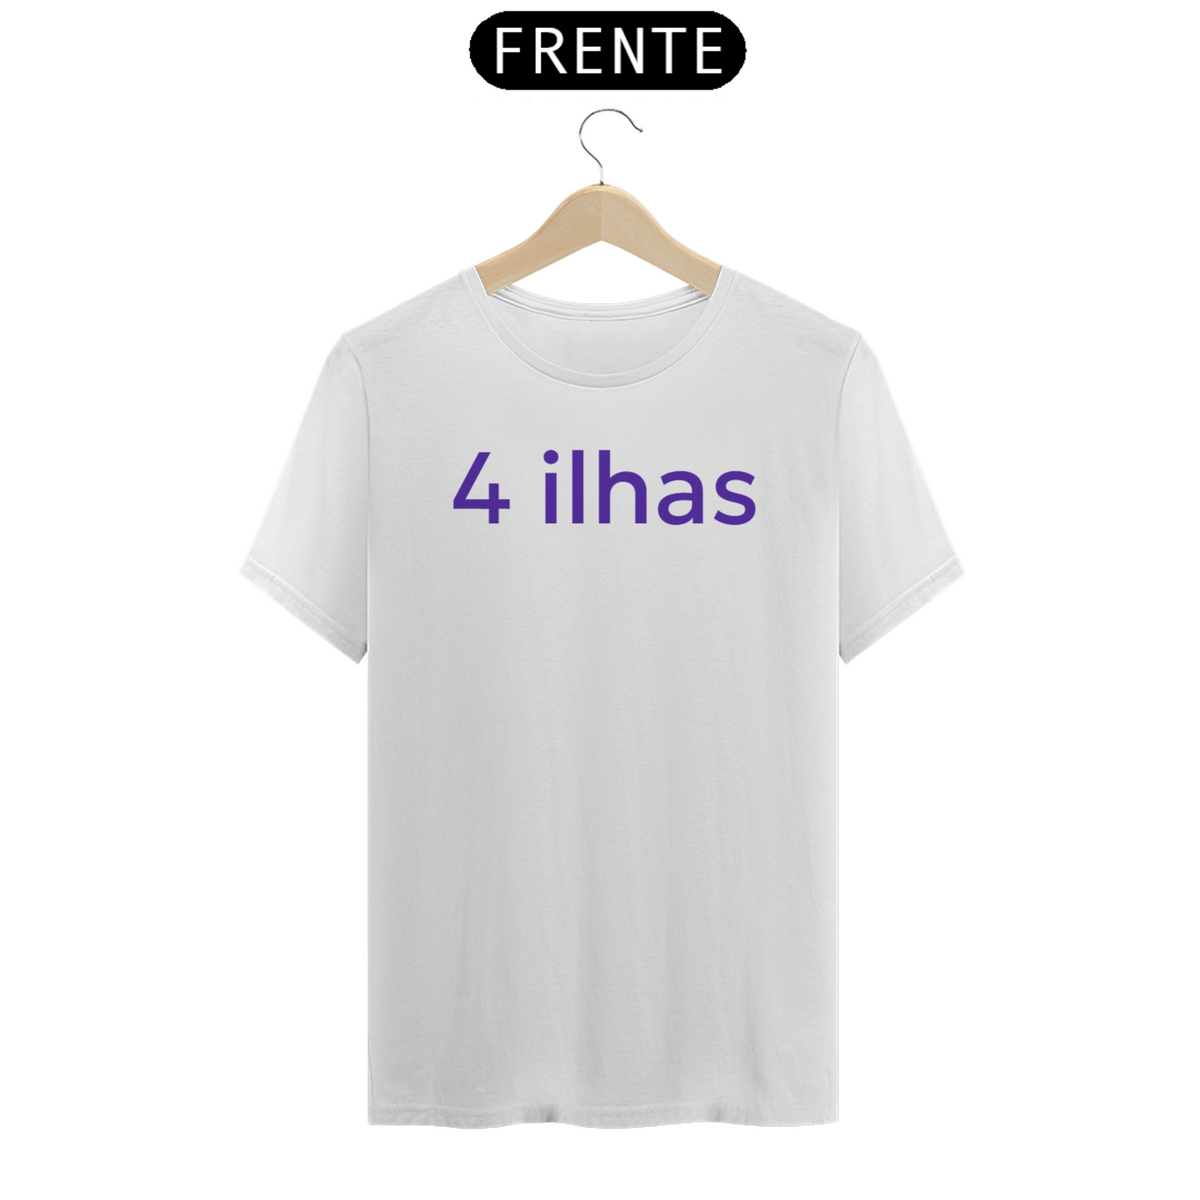 Nome do produto: Camiseta 4 ilhas br